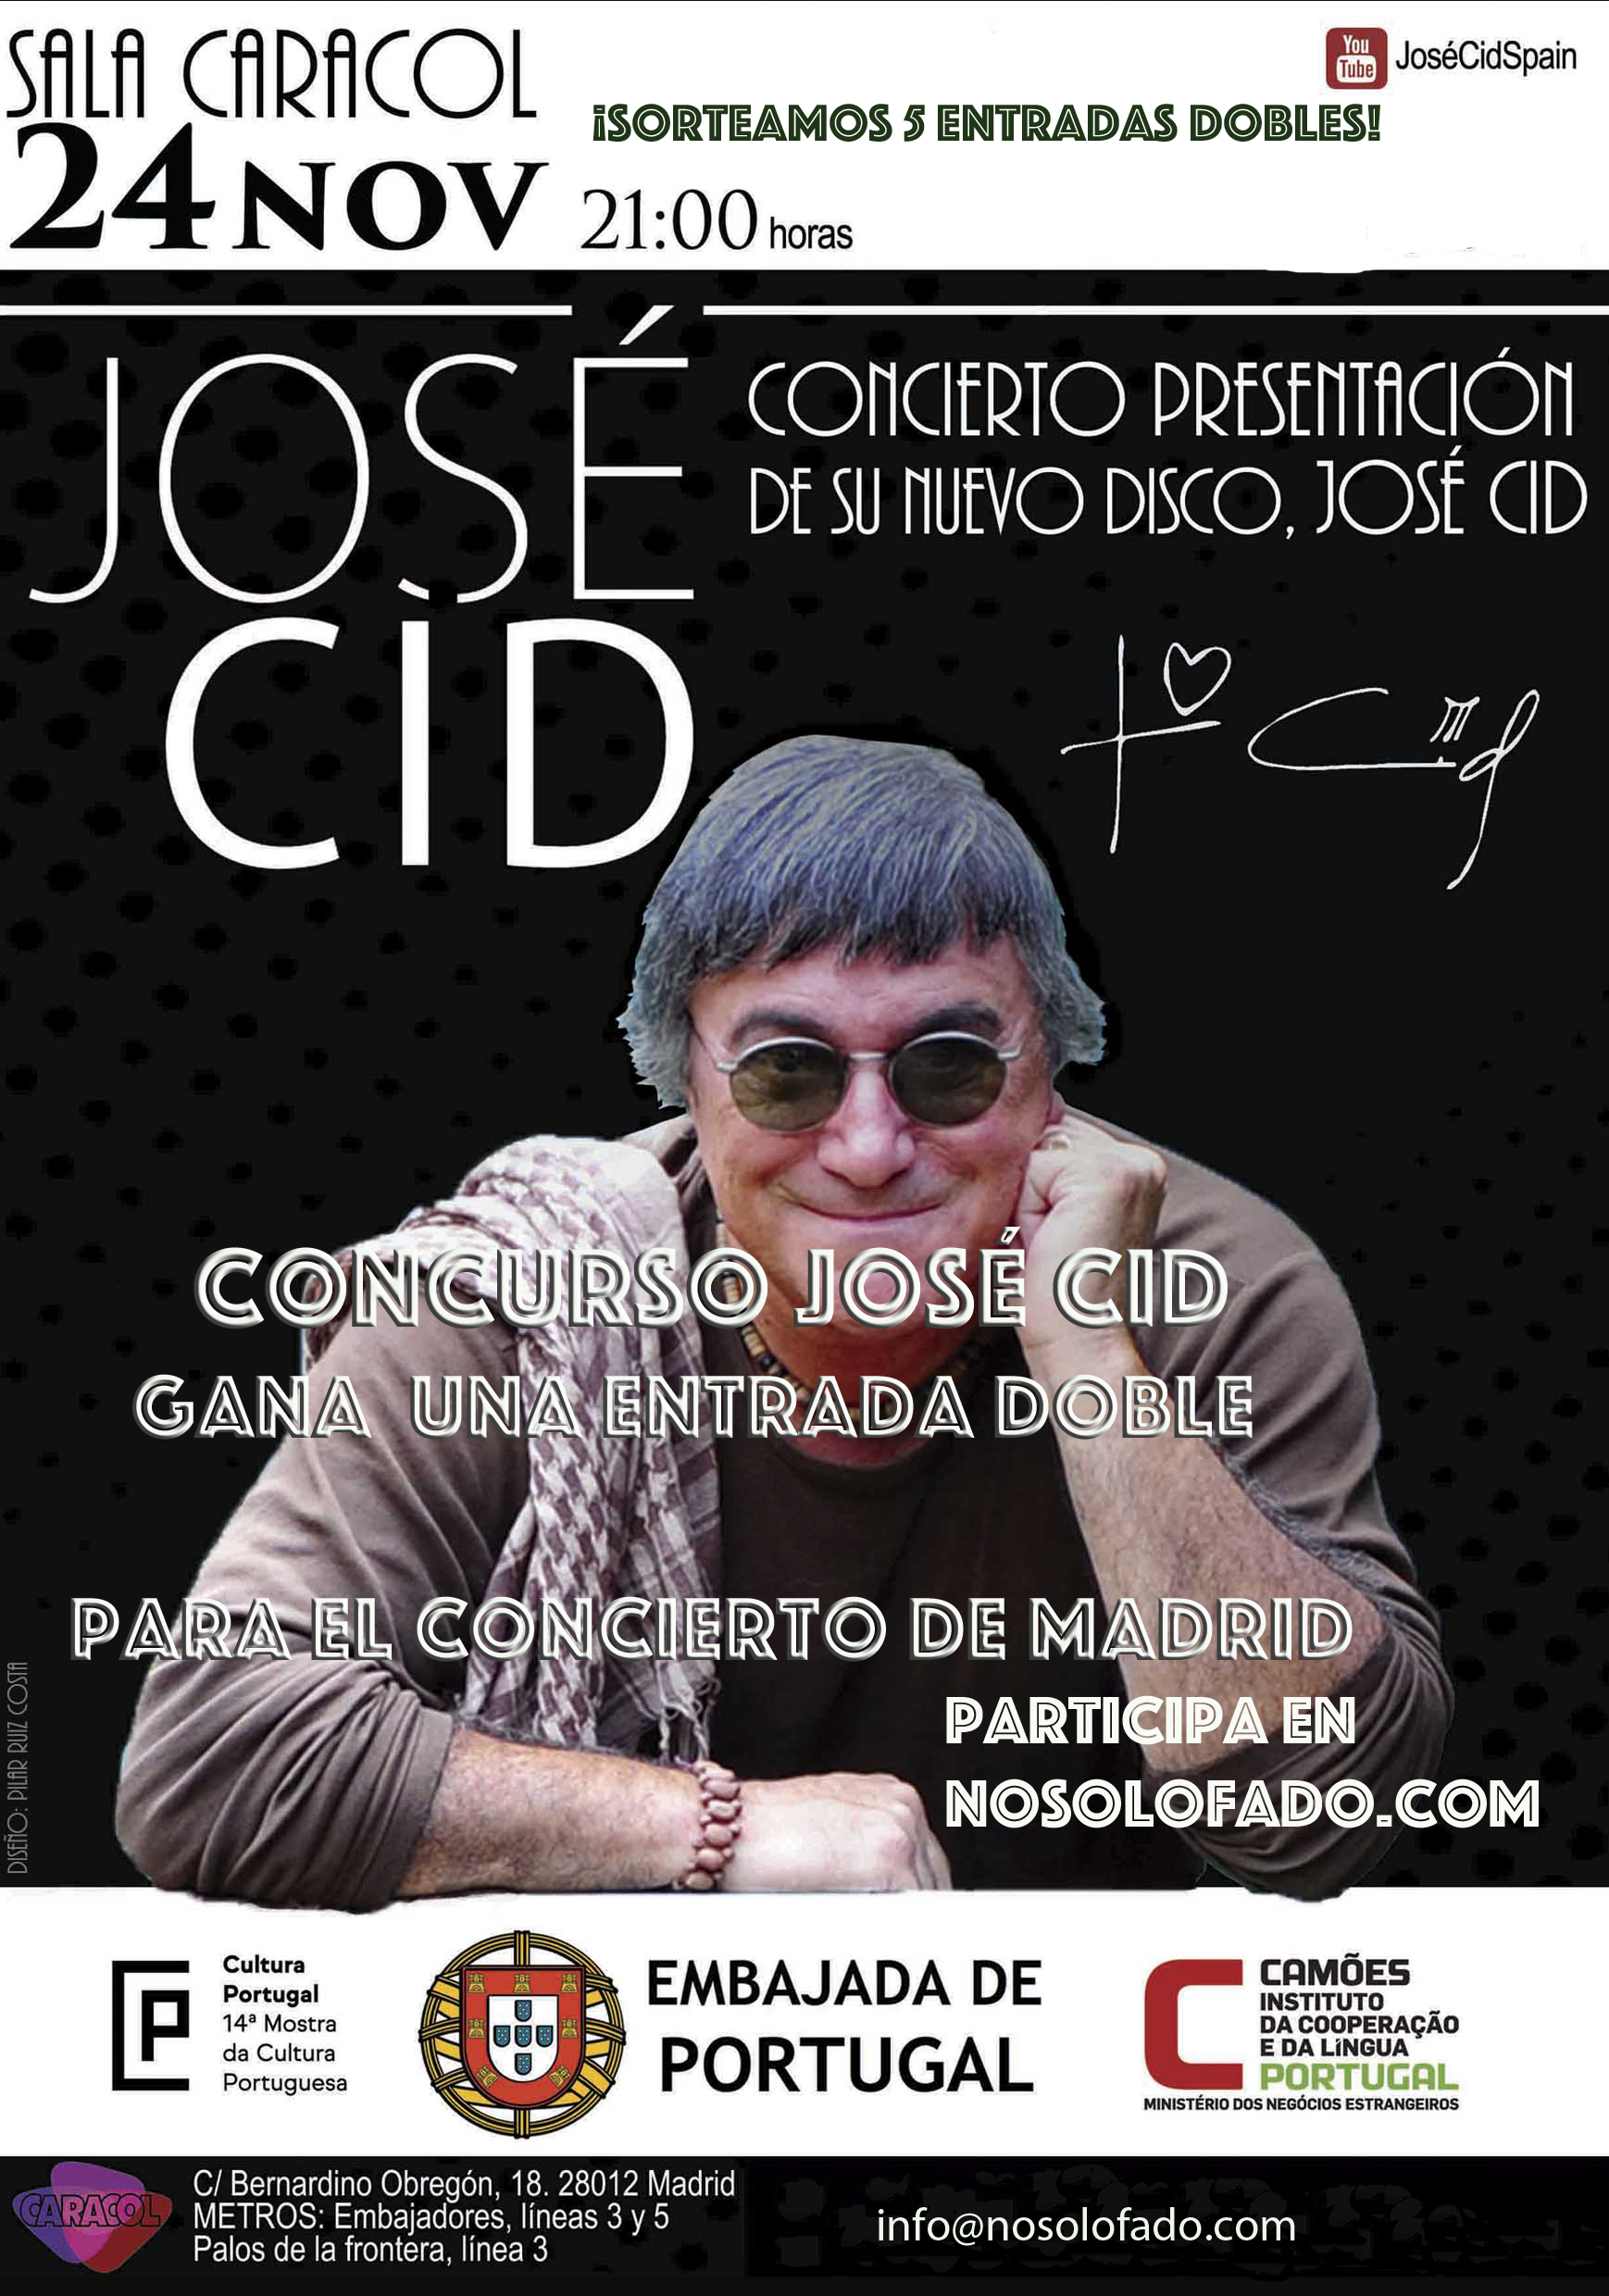 Concurso José Cid en nosolofado.com